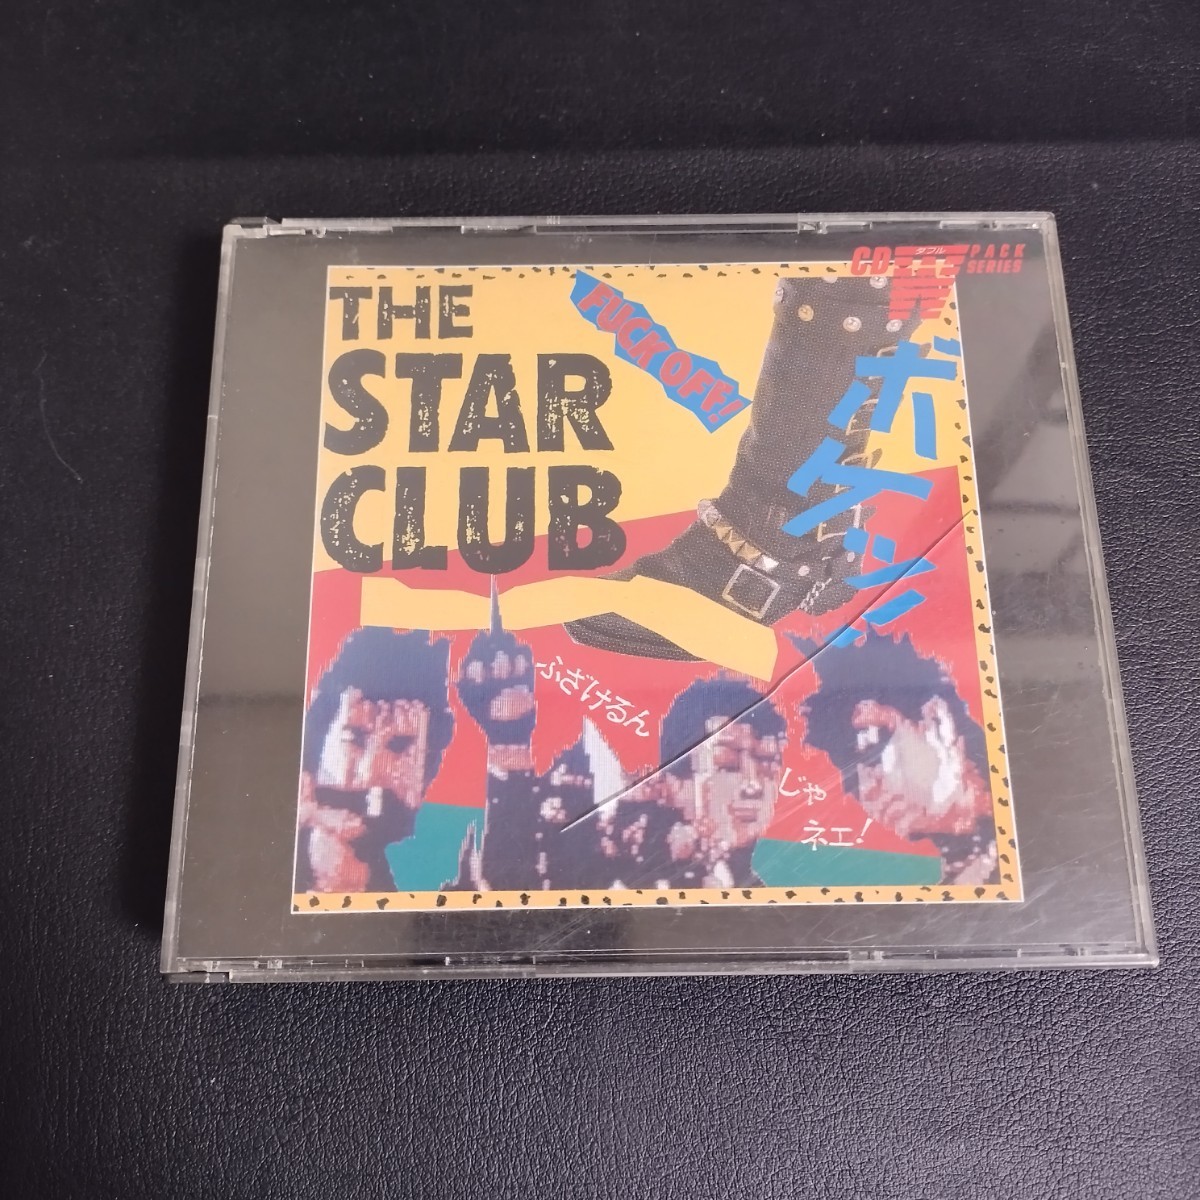 【ザ・スタークラブ】ベスト・コレクション 邦楽CD 1986年 CD2枚組_画像1